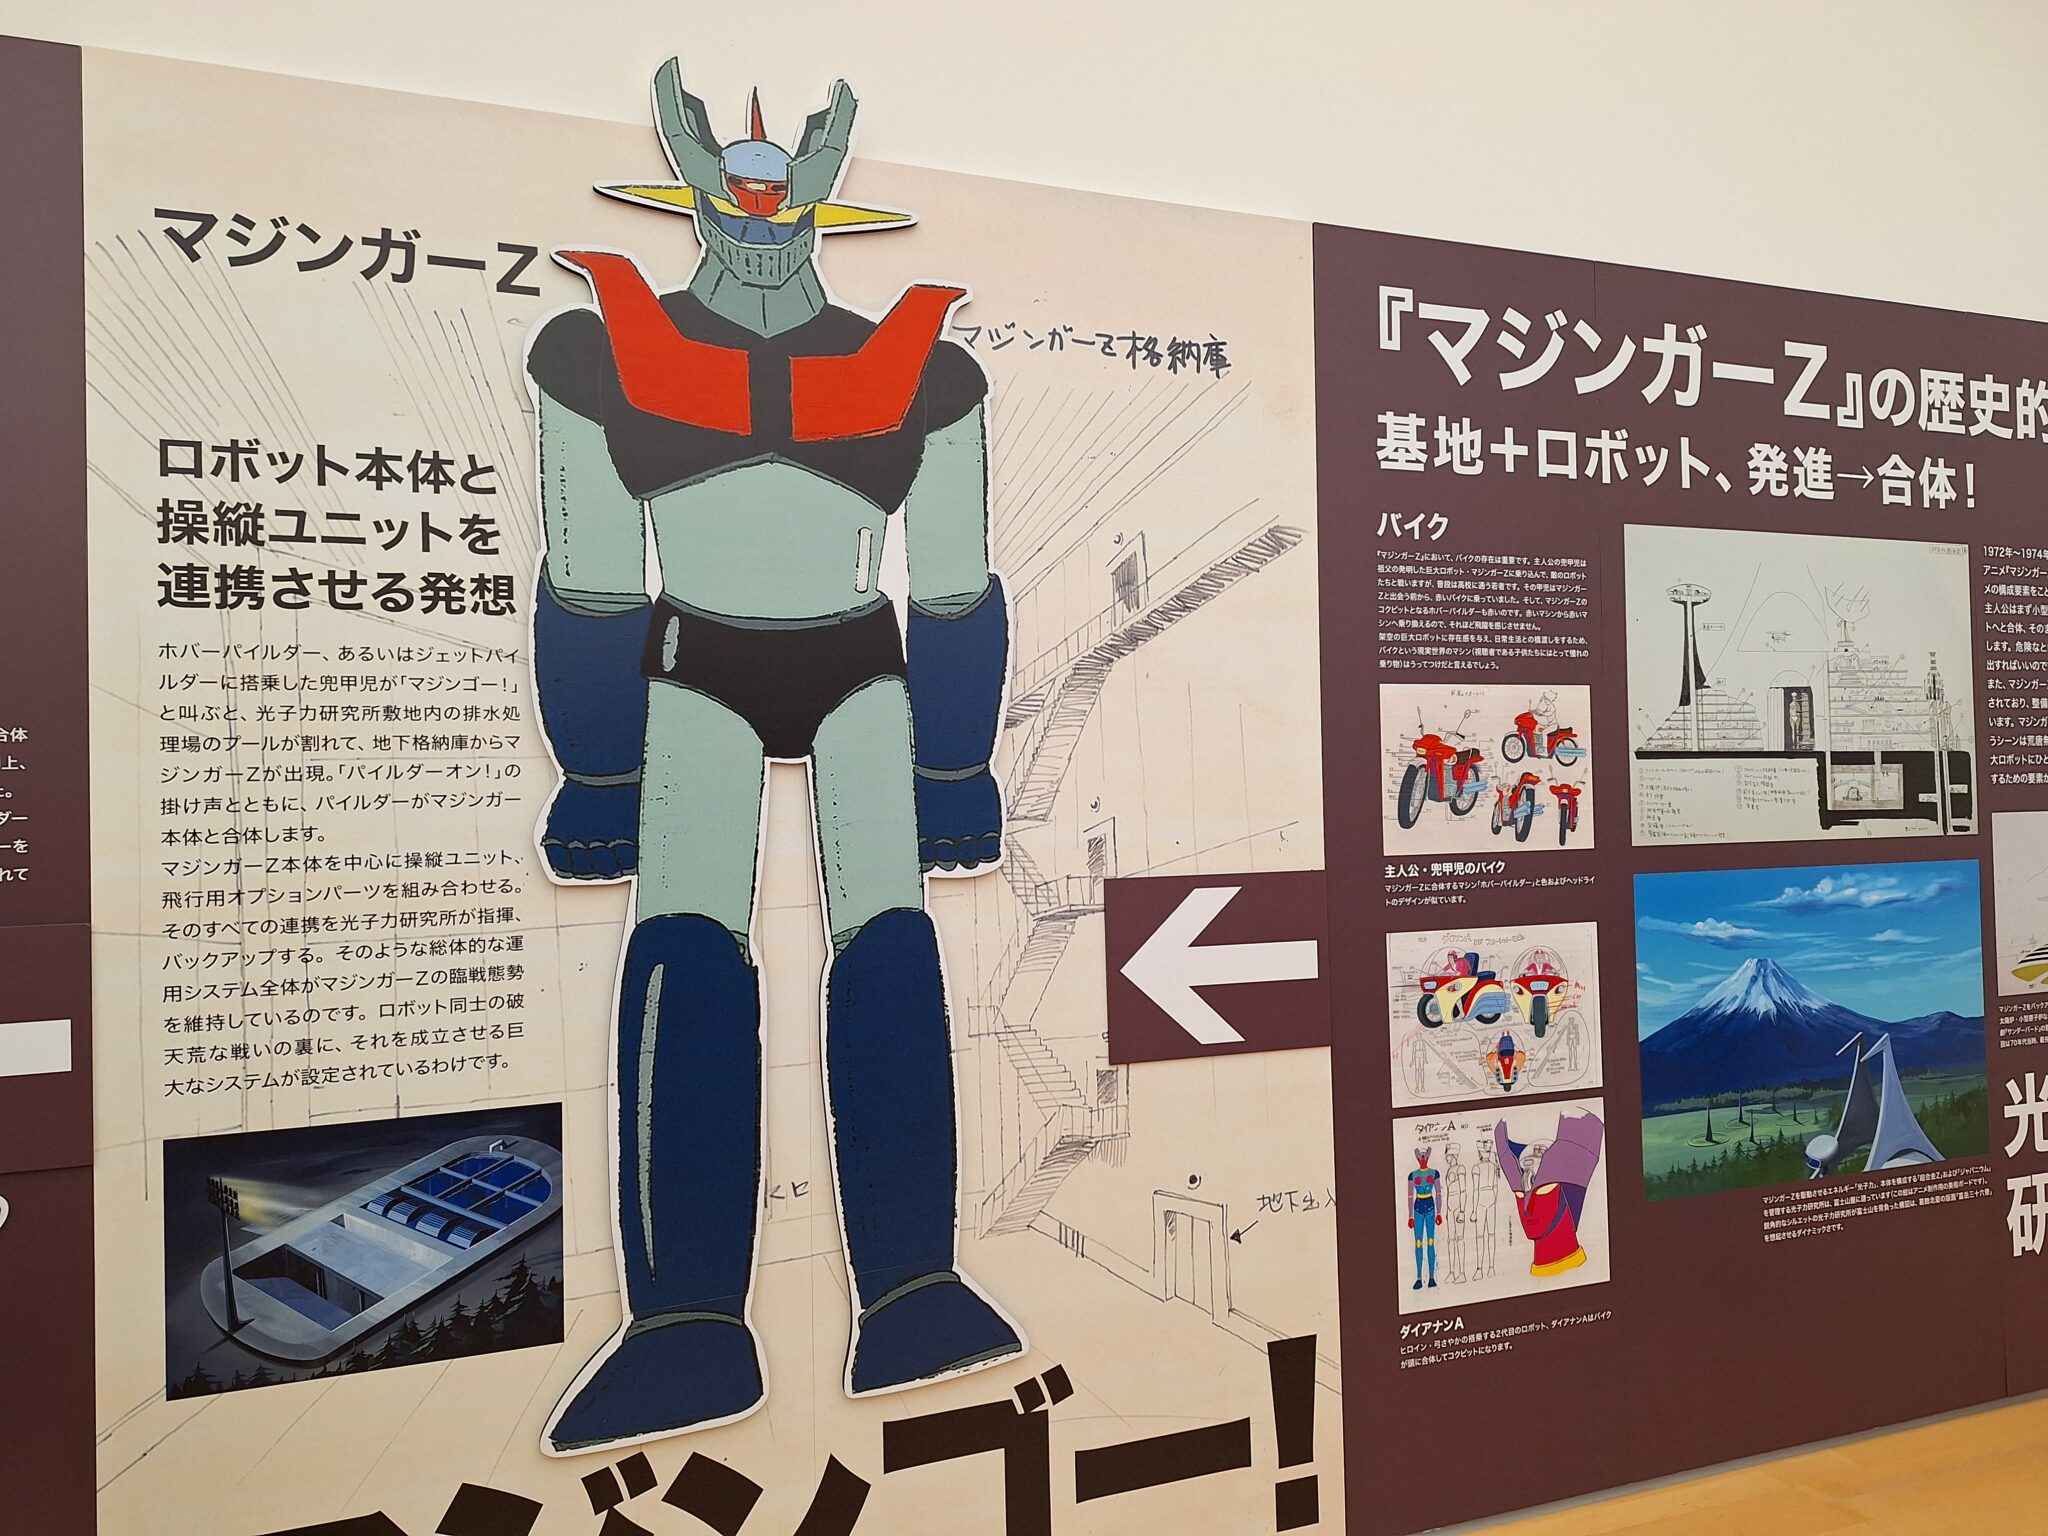 日本の巨大ロボット群像 GIANT ROBOTS 横須賀美術館 - ぶらっくまのブログ